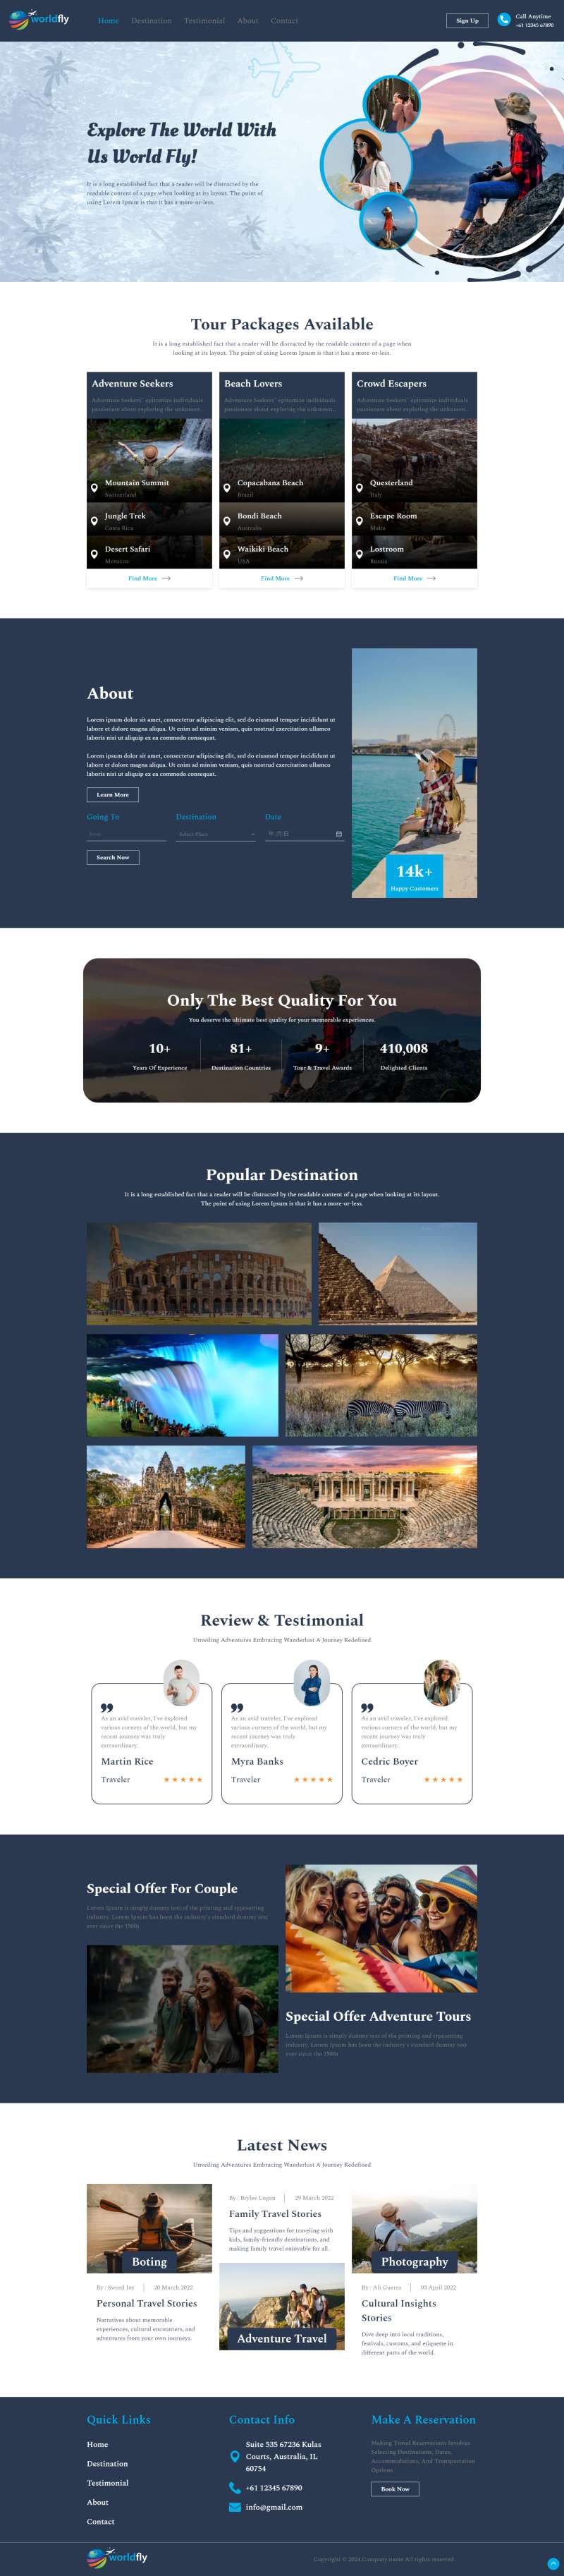 探索旅游公司网站界面设计模板必备